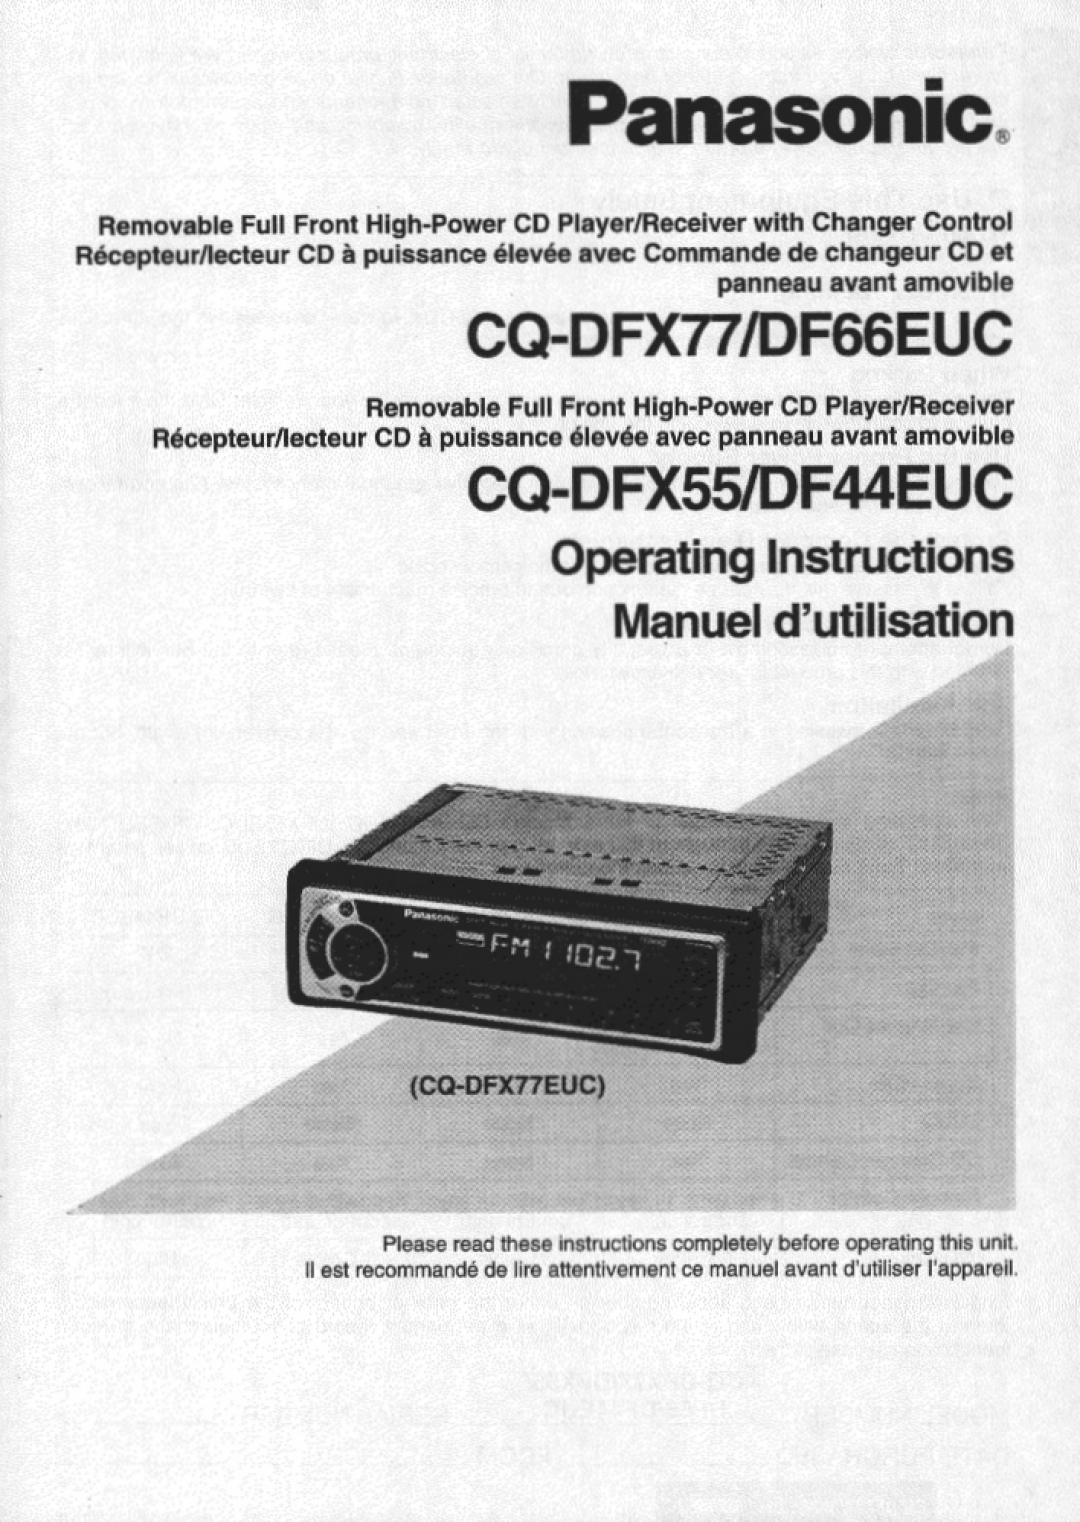 Panasonic DF66EUC, CQ-DFX77, DF44EUC, CQ-DFX55 manual 